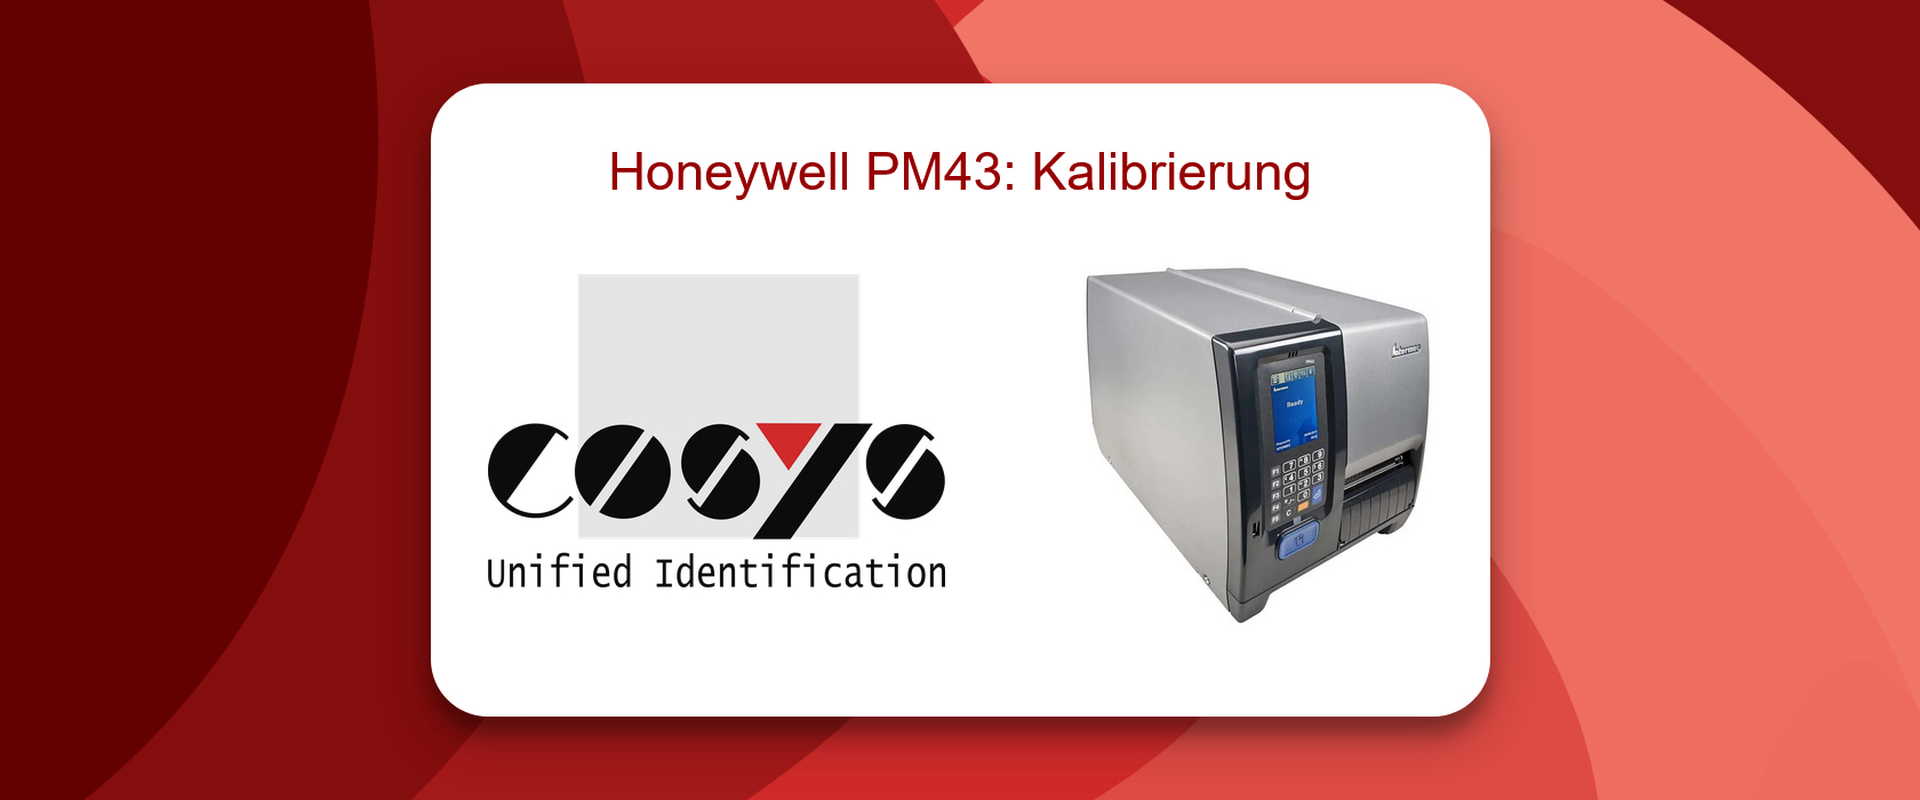 Kalibrierung des Honeywell PM43